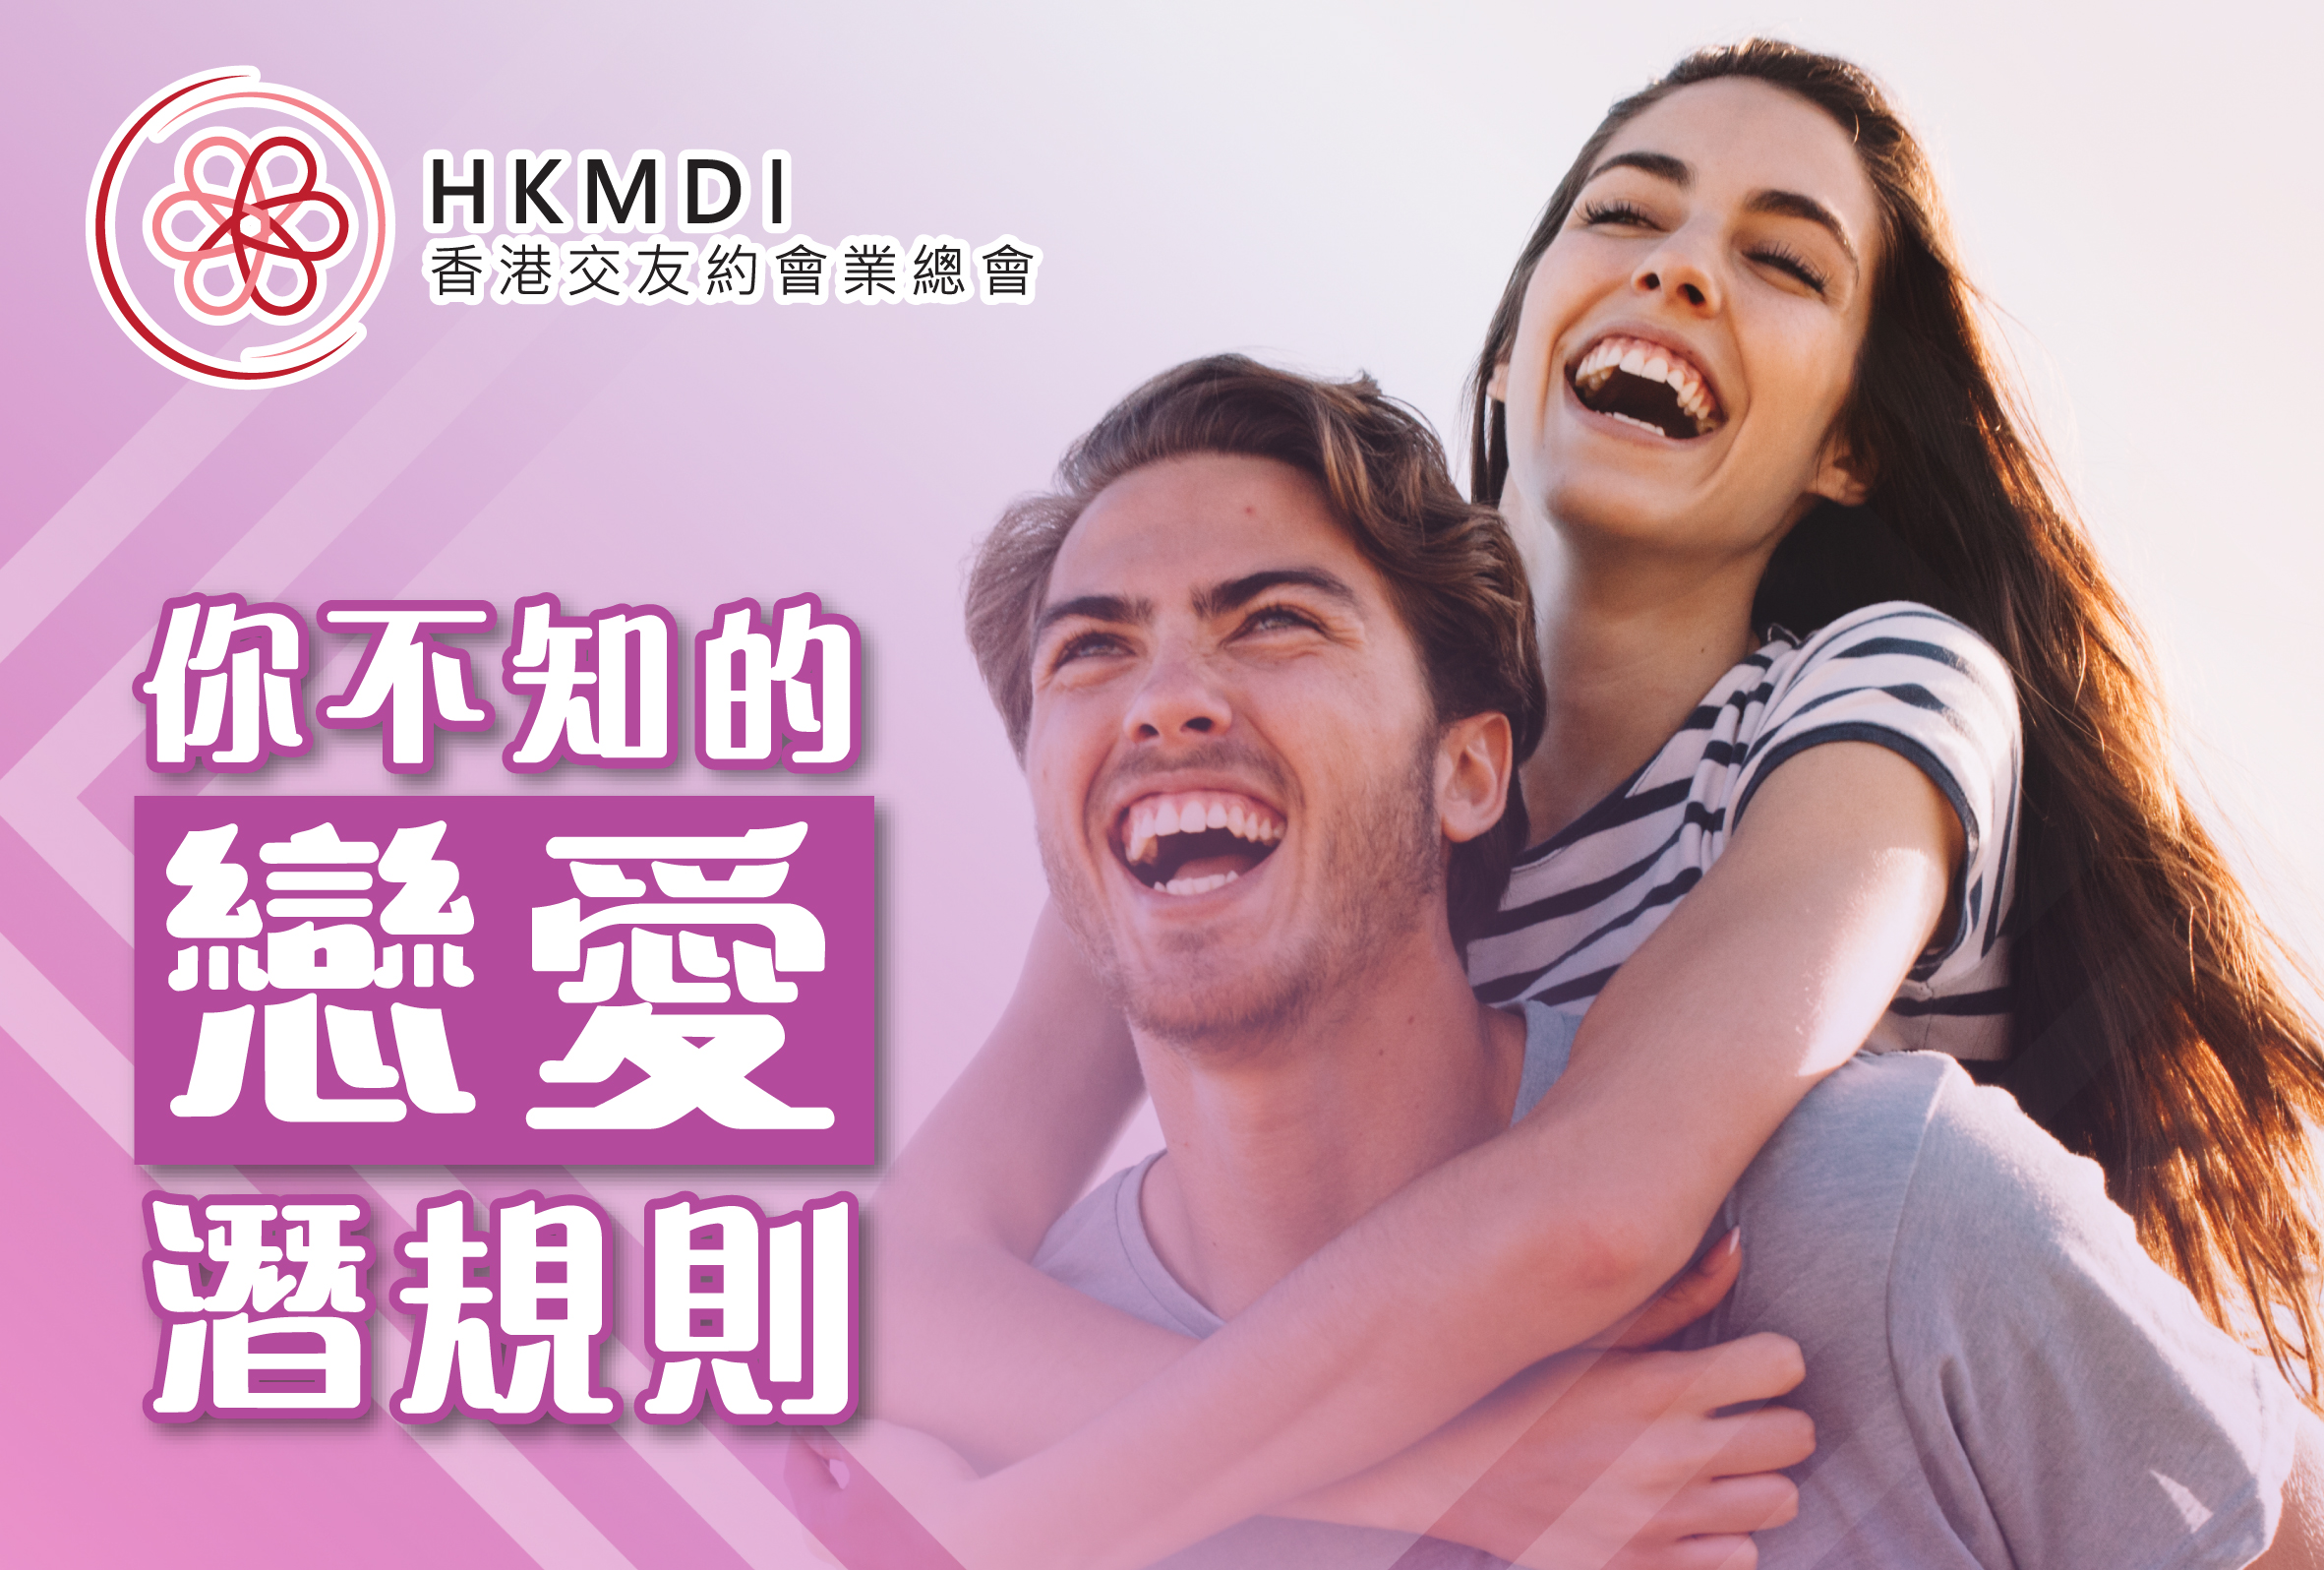 (完滿舉行) 戀愛潛規則講座 (只限女士參加) - 2019年7月11日 香港交友約會業協會 Hong Kong Speed Dating Federation - Speed Dating , 一對一約會, 單對單約會, 約會行業, 約會配對